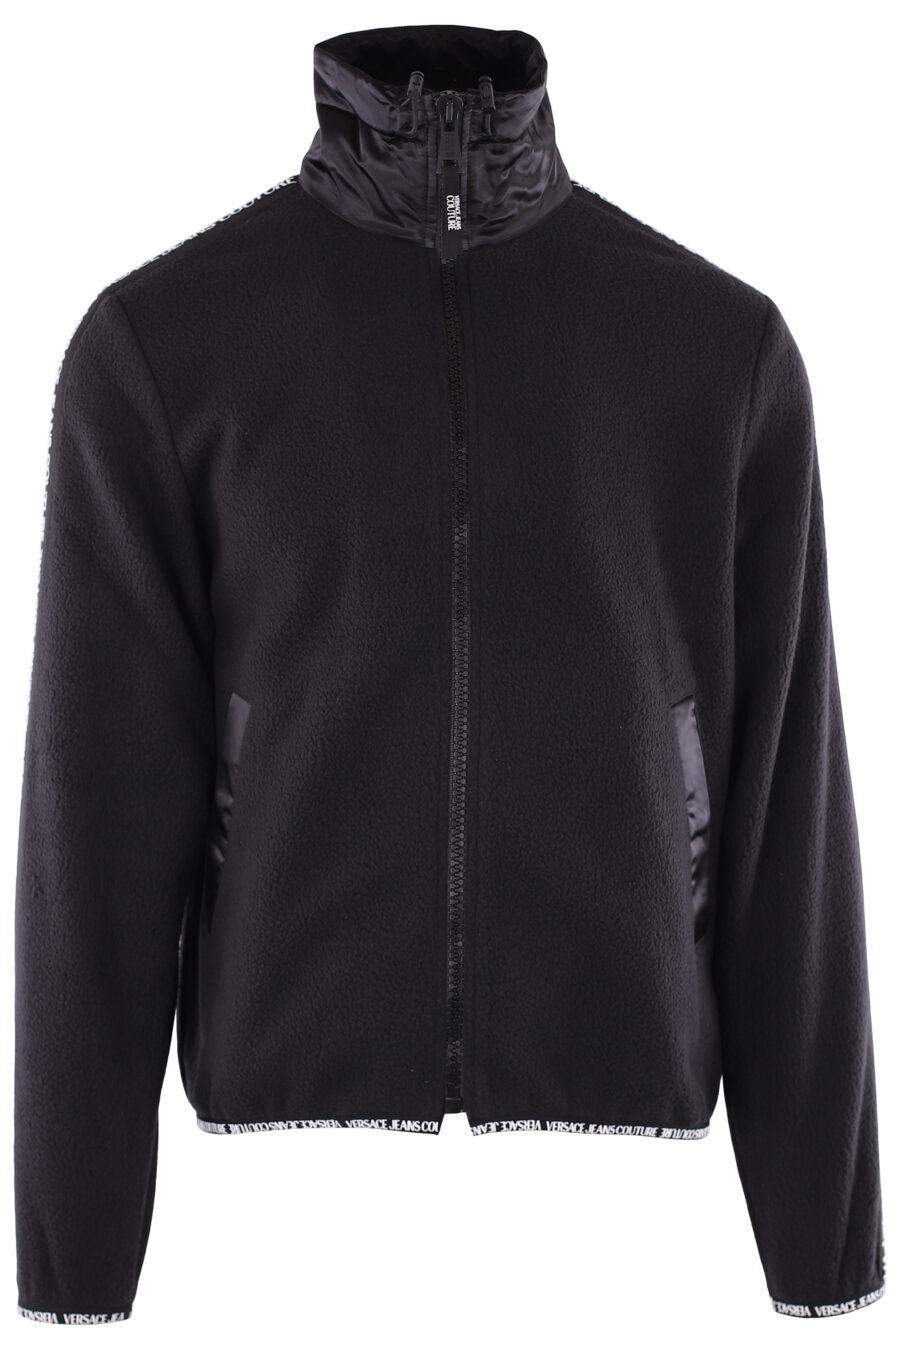 Black fleece sweatshirt with ribbon logo on sleeves - IMG 6369